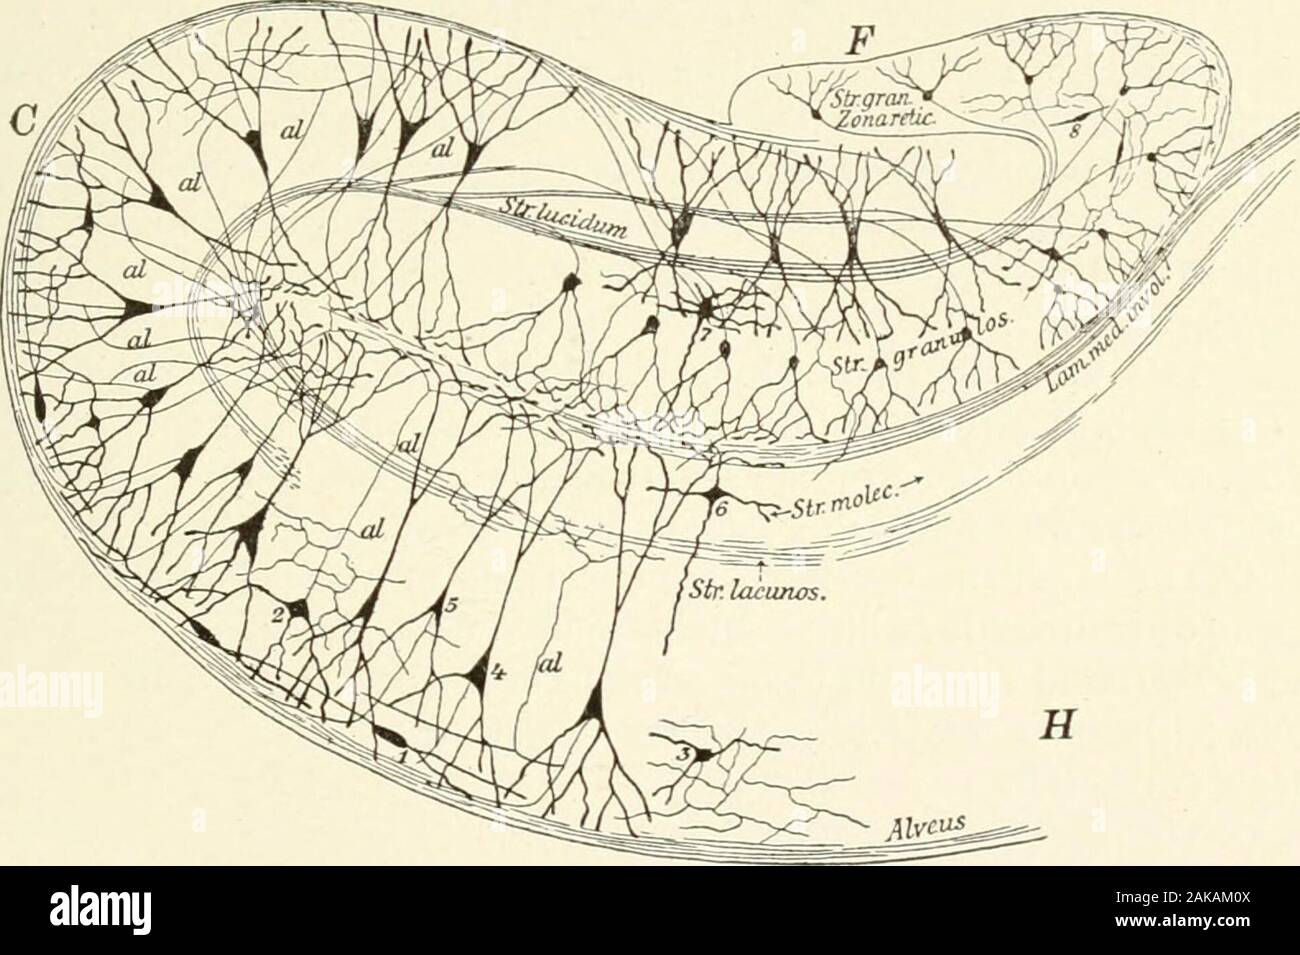 Lehrbuch der normalen Histologie: einschließlich der Berücksichtigung der Entwicklung der Gewebe und der Organe. schräg, bis, innerhalb des fimbria, ihre directionalmost fällt mit der langen Achse des cornu Ammonis. Das zentrale Nervensystem. 317 2. Das stratum Oriens, repräsentiert die fünfte Schicht des Cortex, auch mit unter die Bündel von Nerven-Fasern die Zahl der Spindel-form Zellen, deren Prozesse parallel mit der freien Fläche erweitern. 3. Das stratum cellularum pyramidalium, die die tieferen Teile des dritten Zerebrale layer conspicuouson correspondsto, und ist angesichts der grossen Py Stockfoto